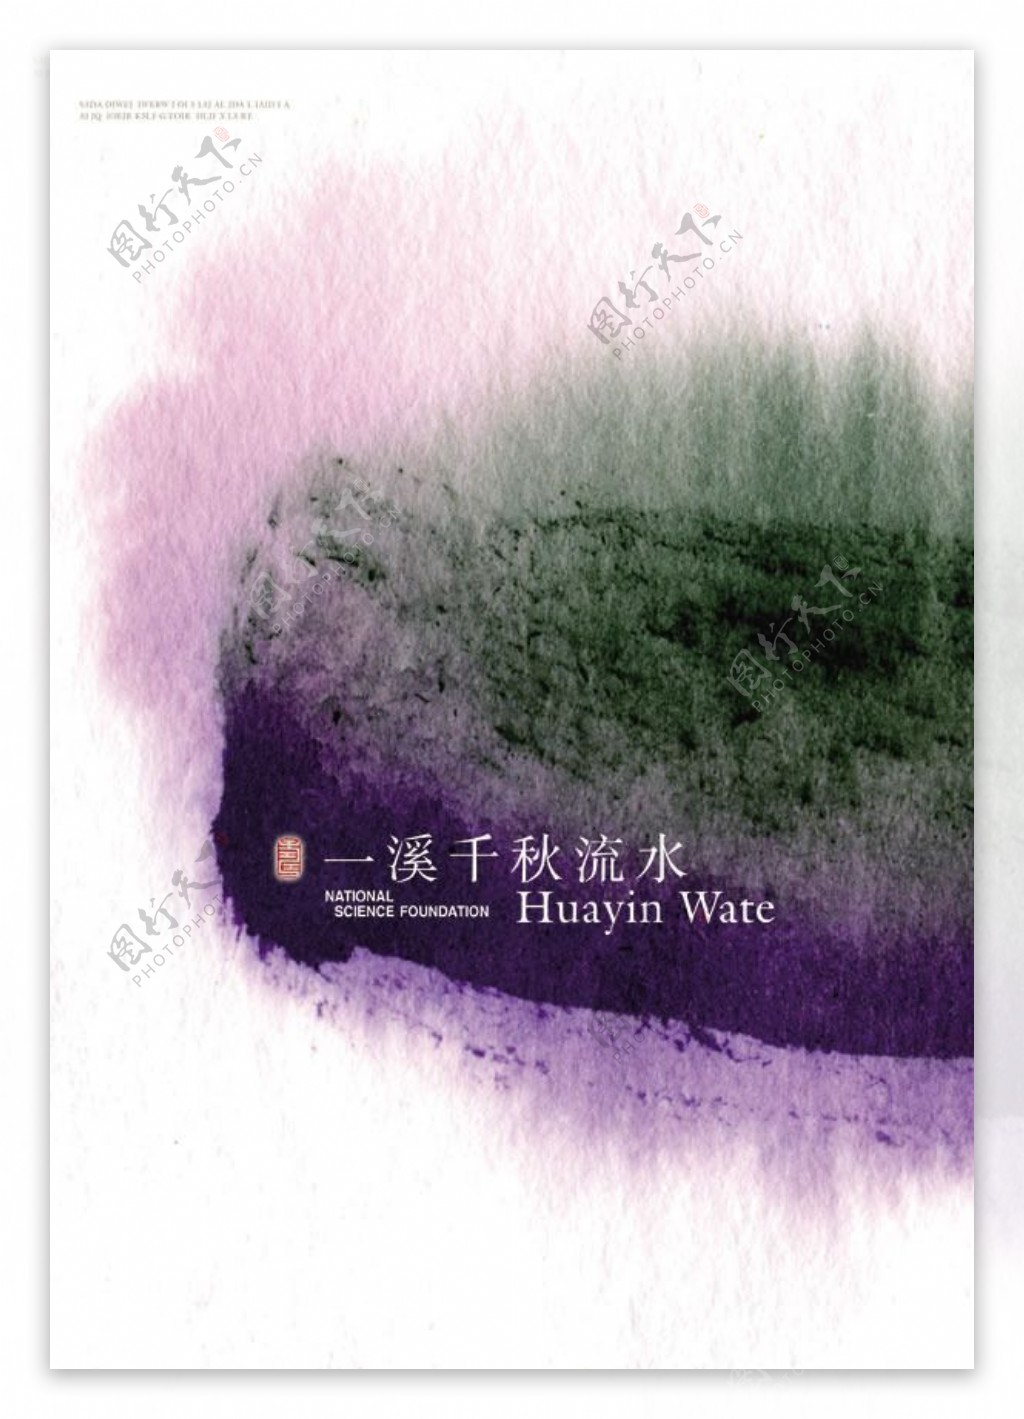 紫色抽象书本封面设计psd素材